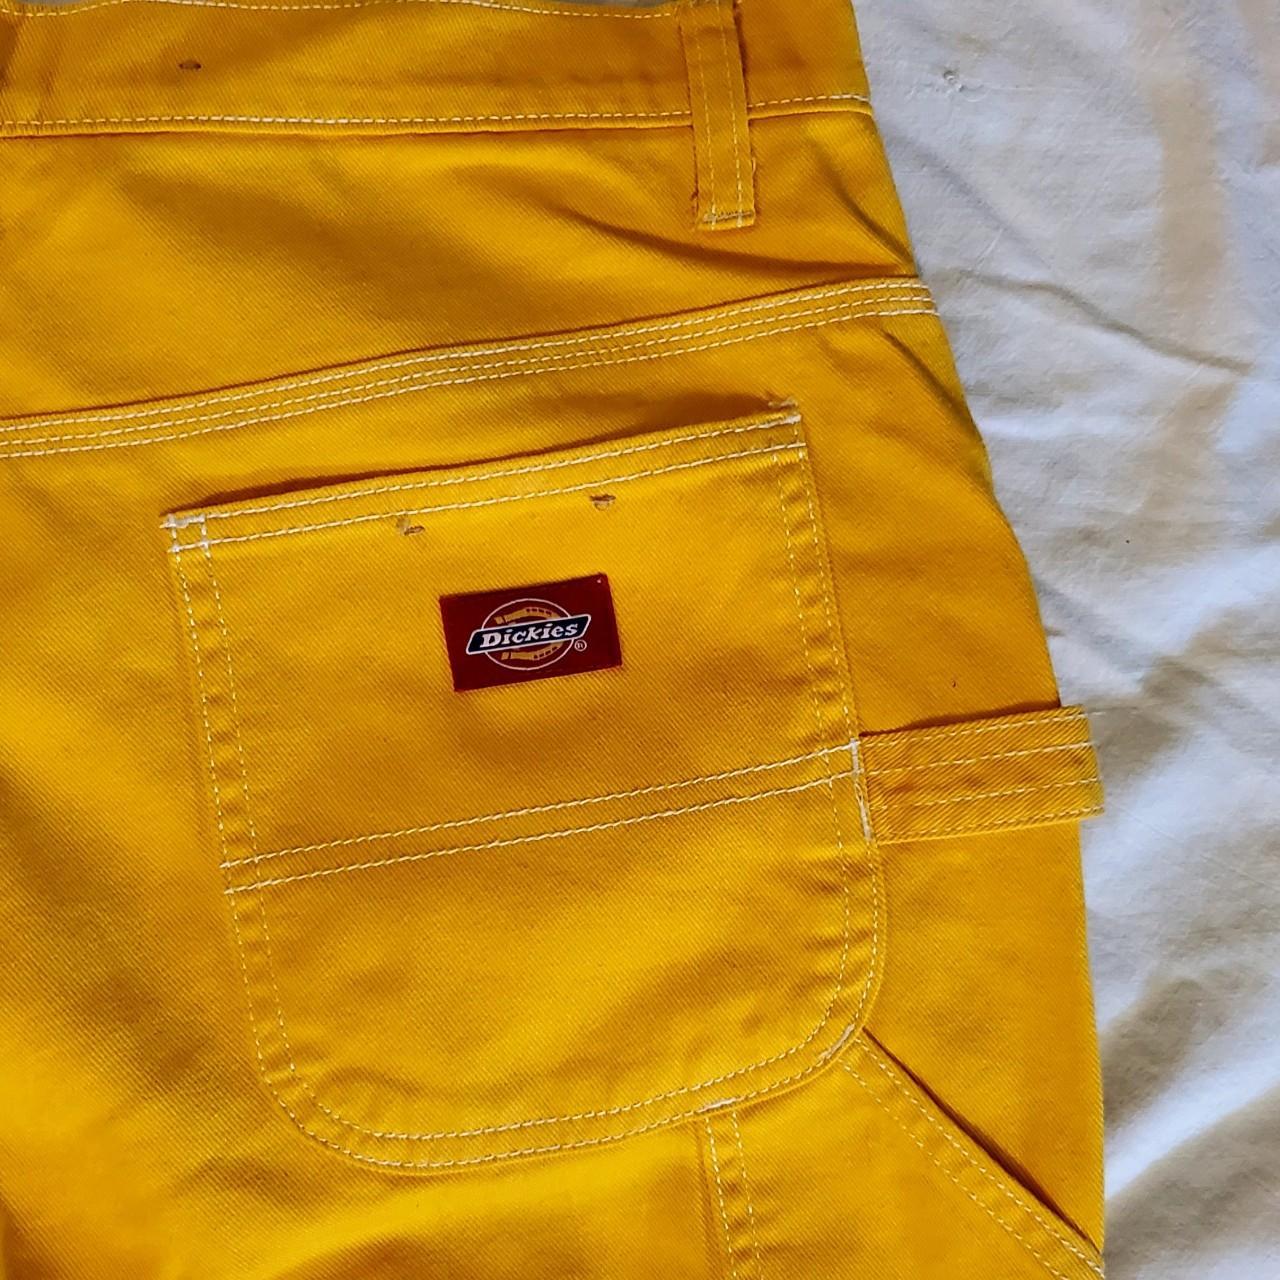 Yellow dickies carpenter pants 😊 so cute and brand... - Depop